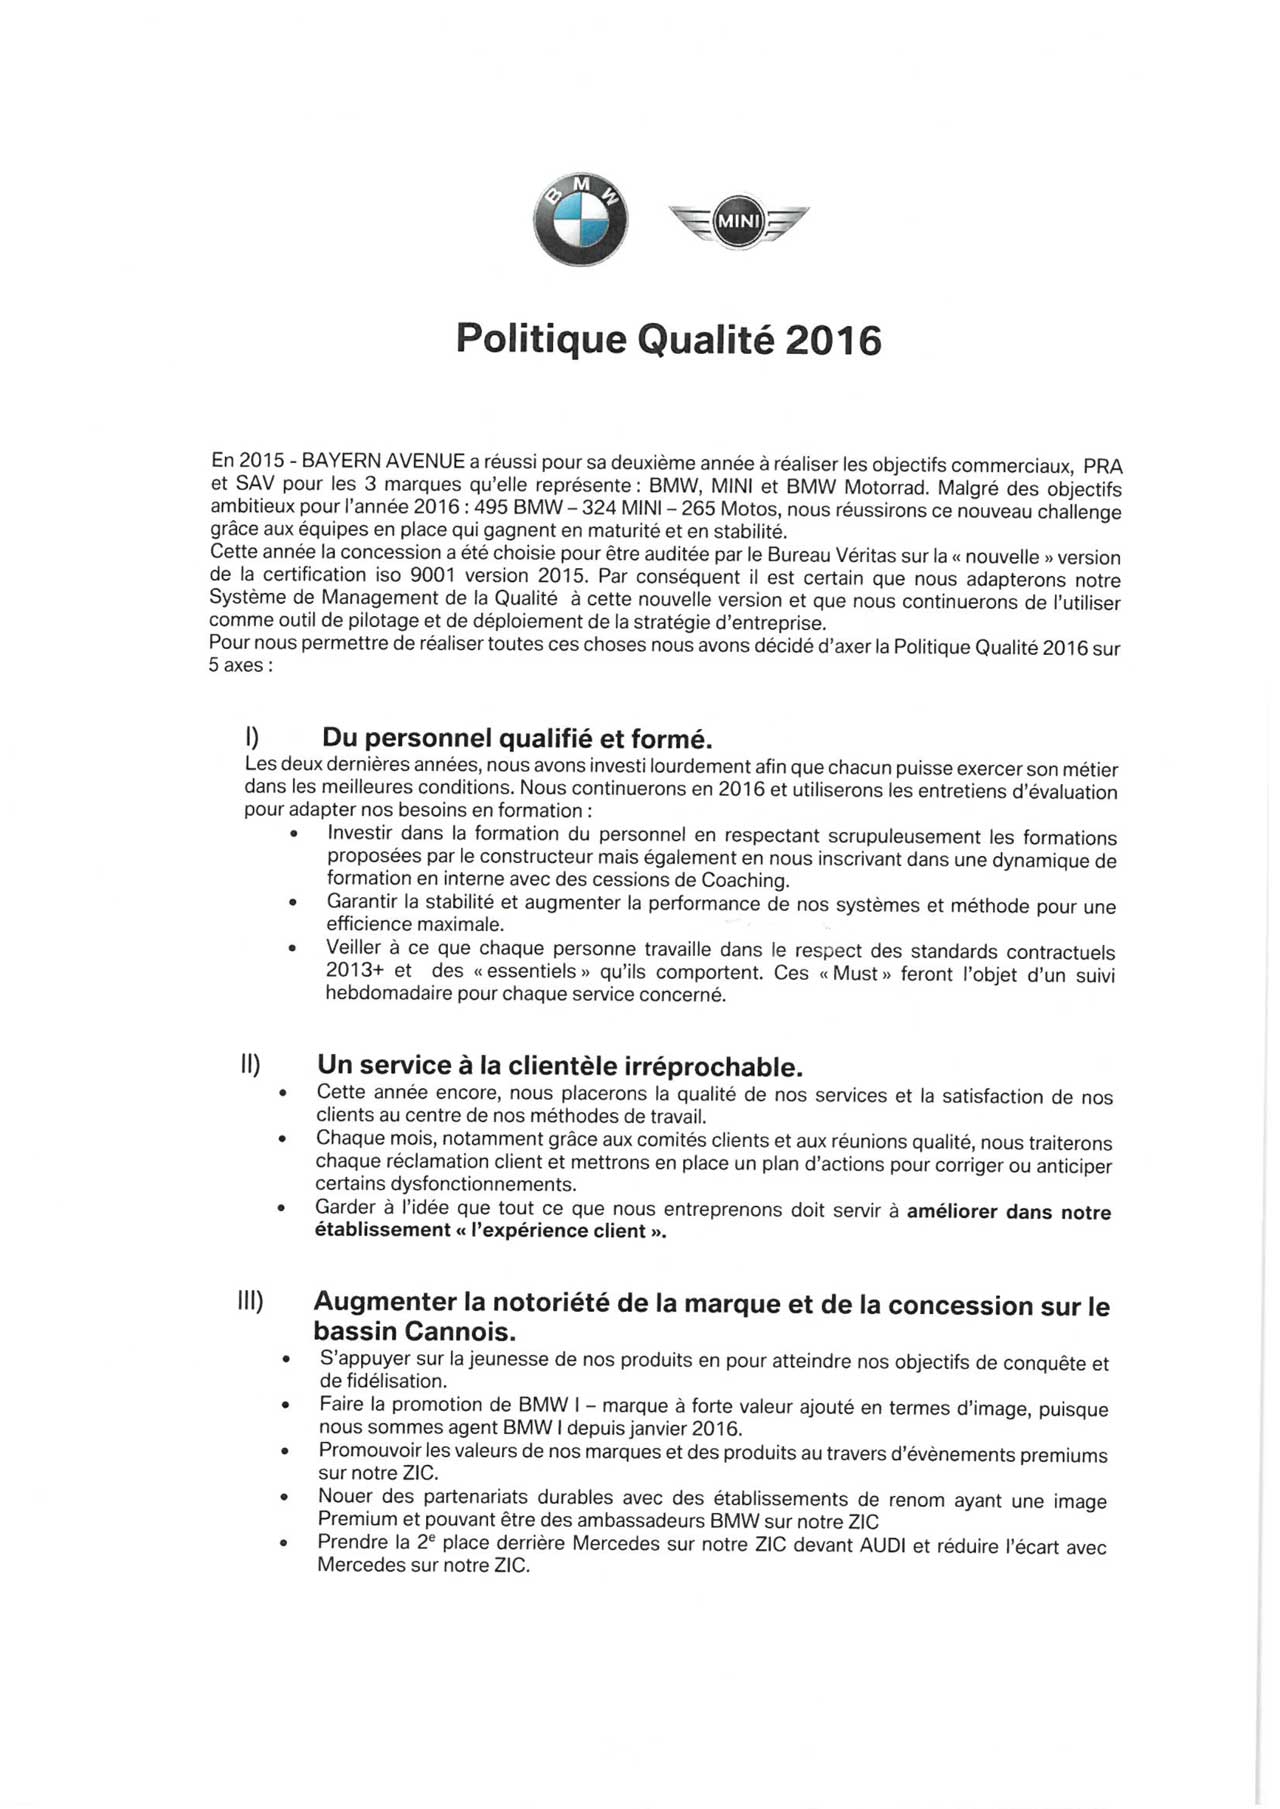 Pol-Qualite-2016.pdf